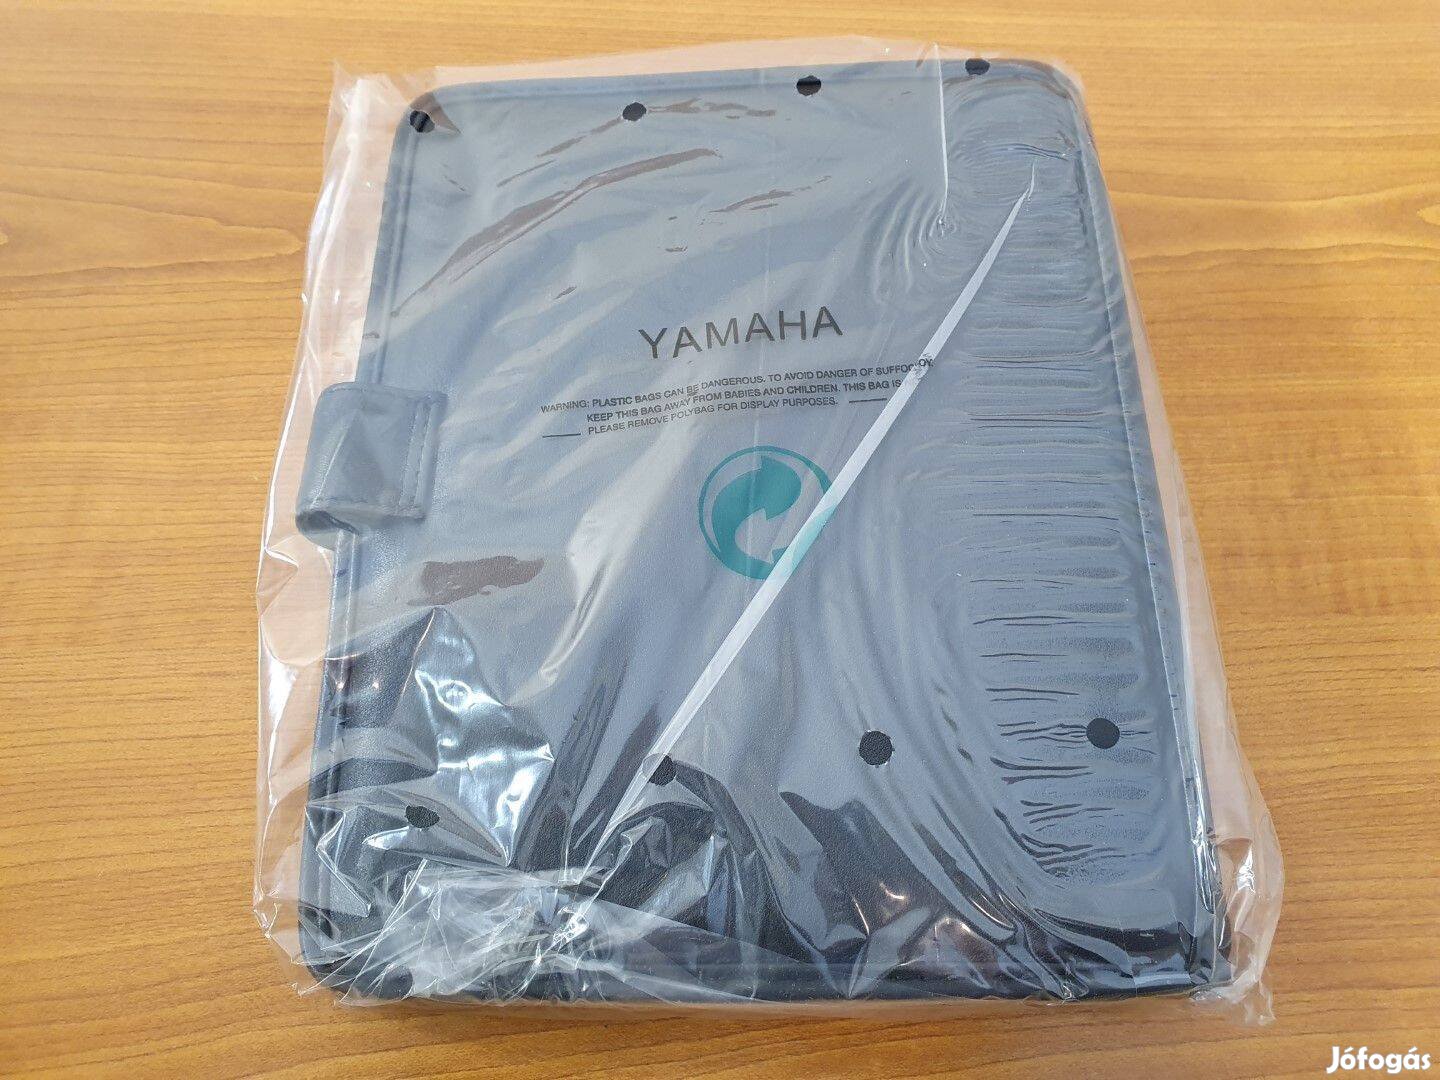 Yamaha Bőr Filofax, irat és kártyatartó - Új 16979